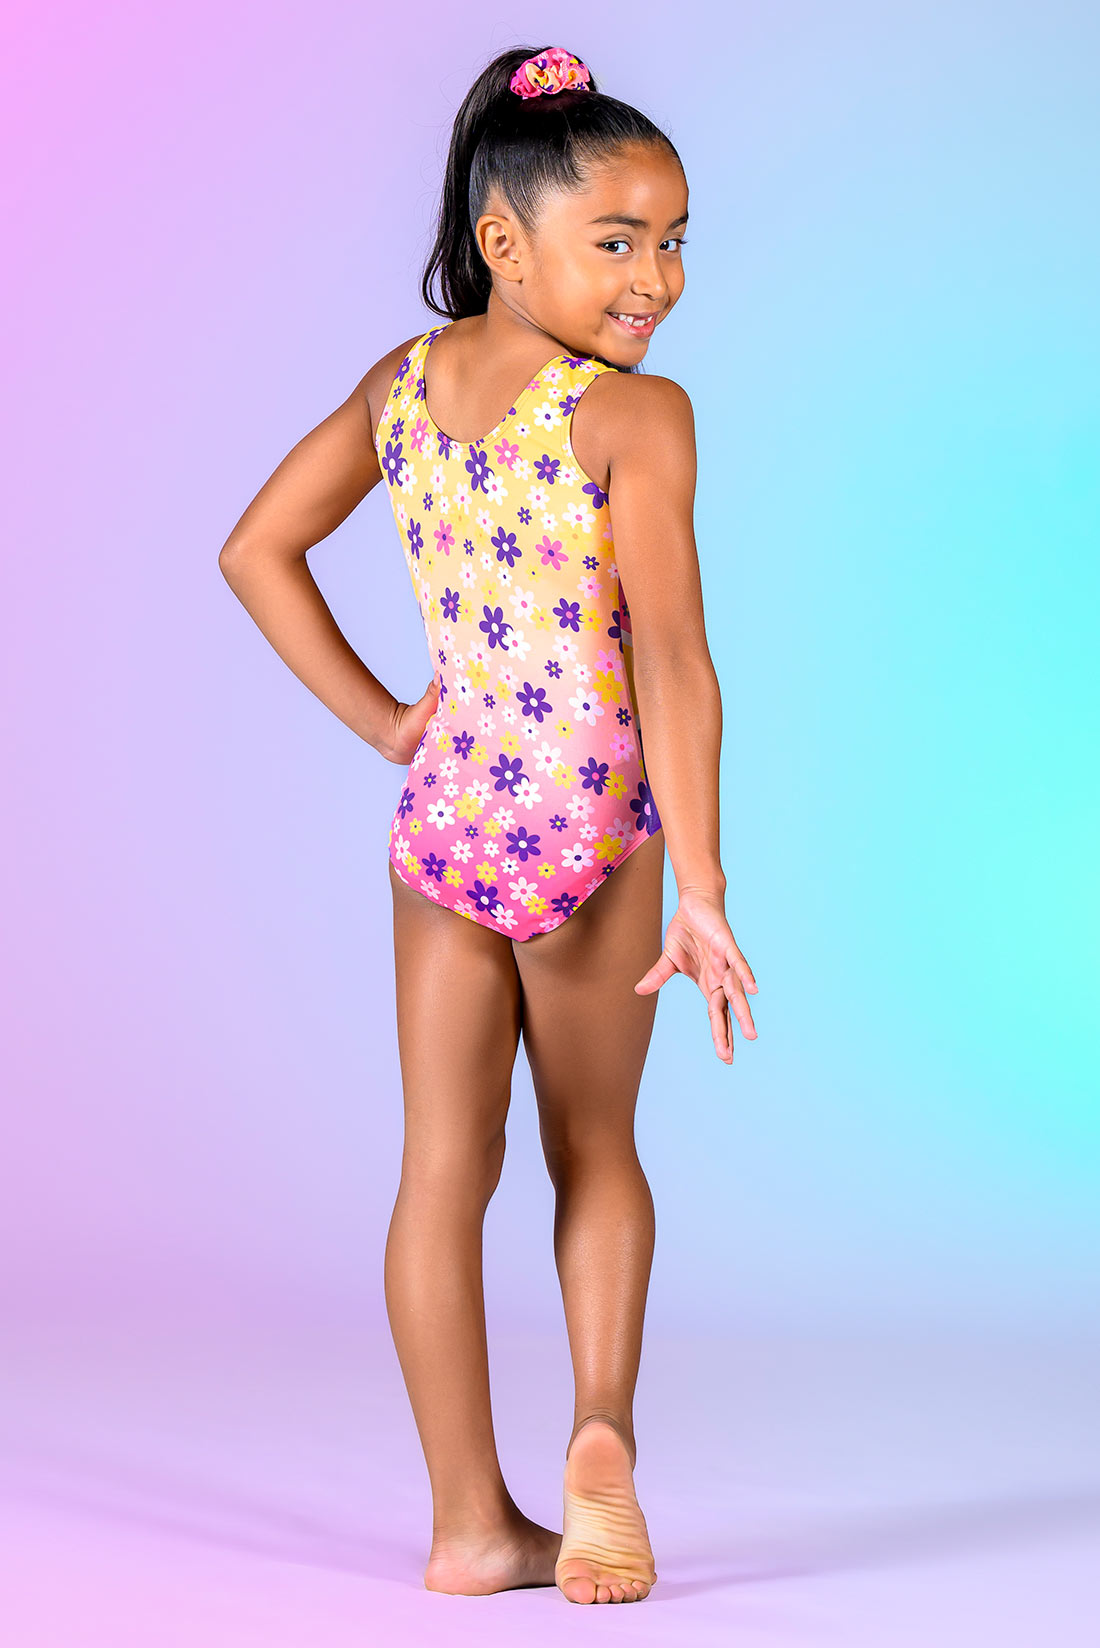 Flower gymnastics leotard inspired by Barbie, Destira, 2023